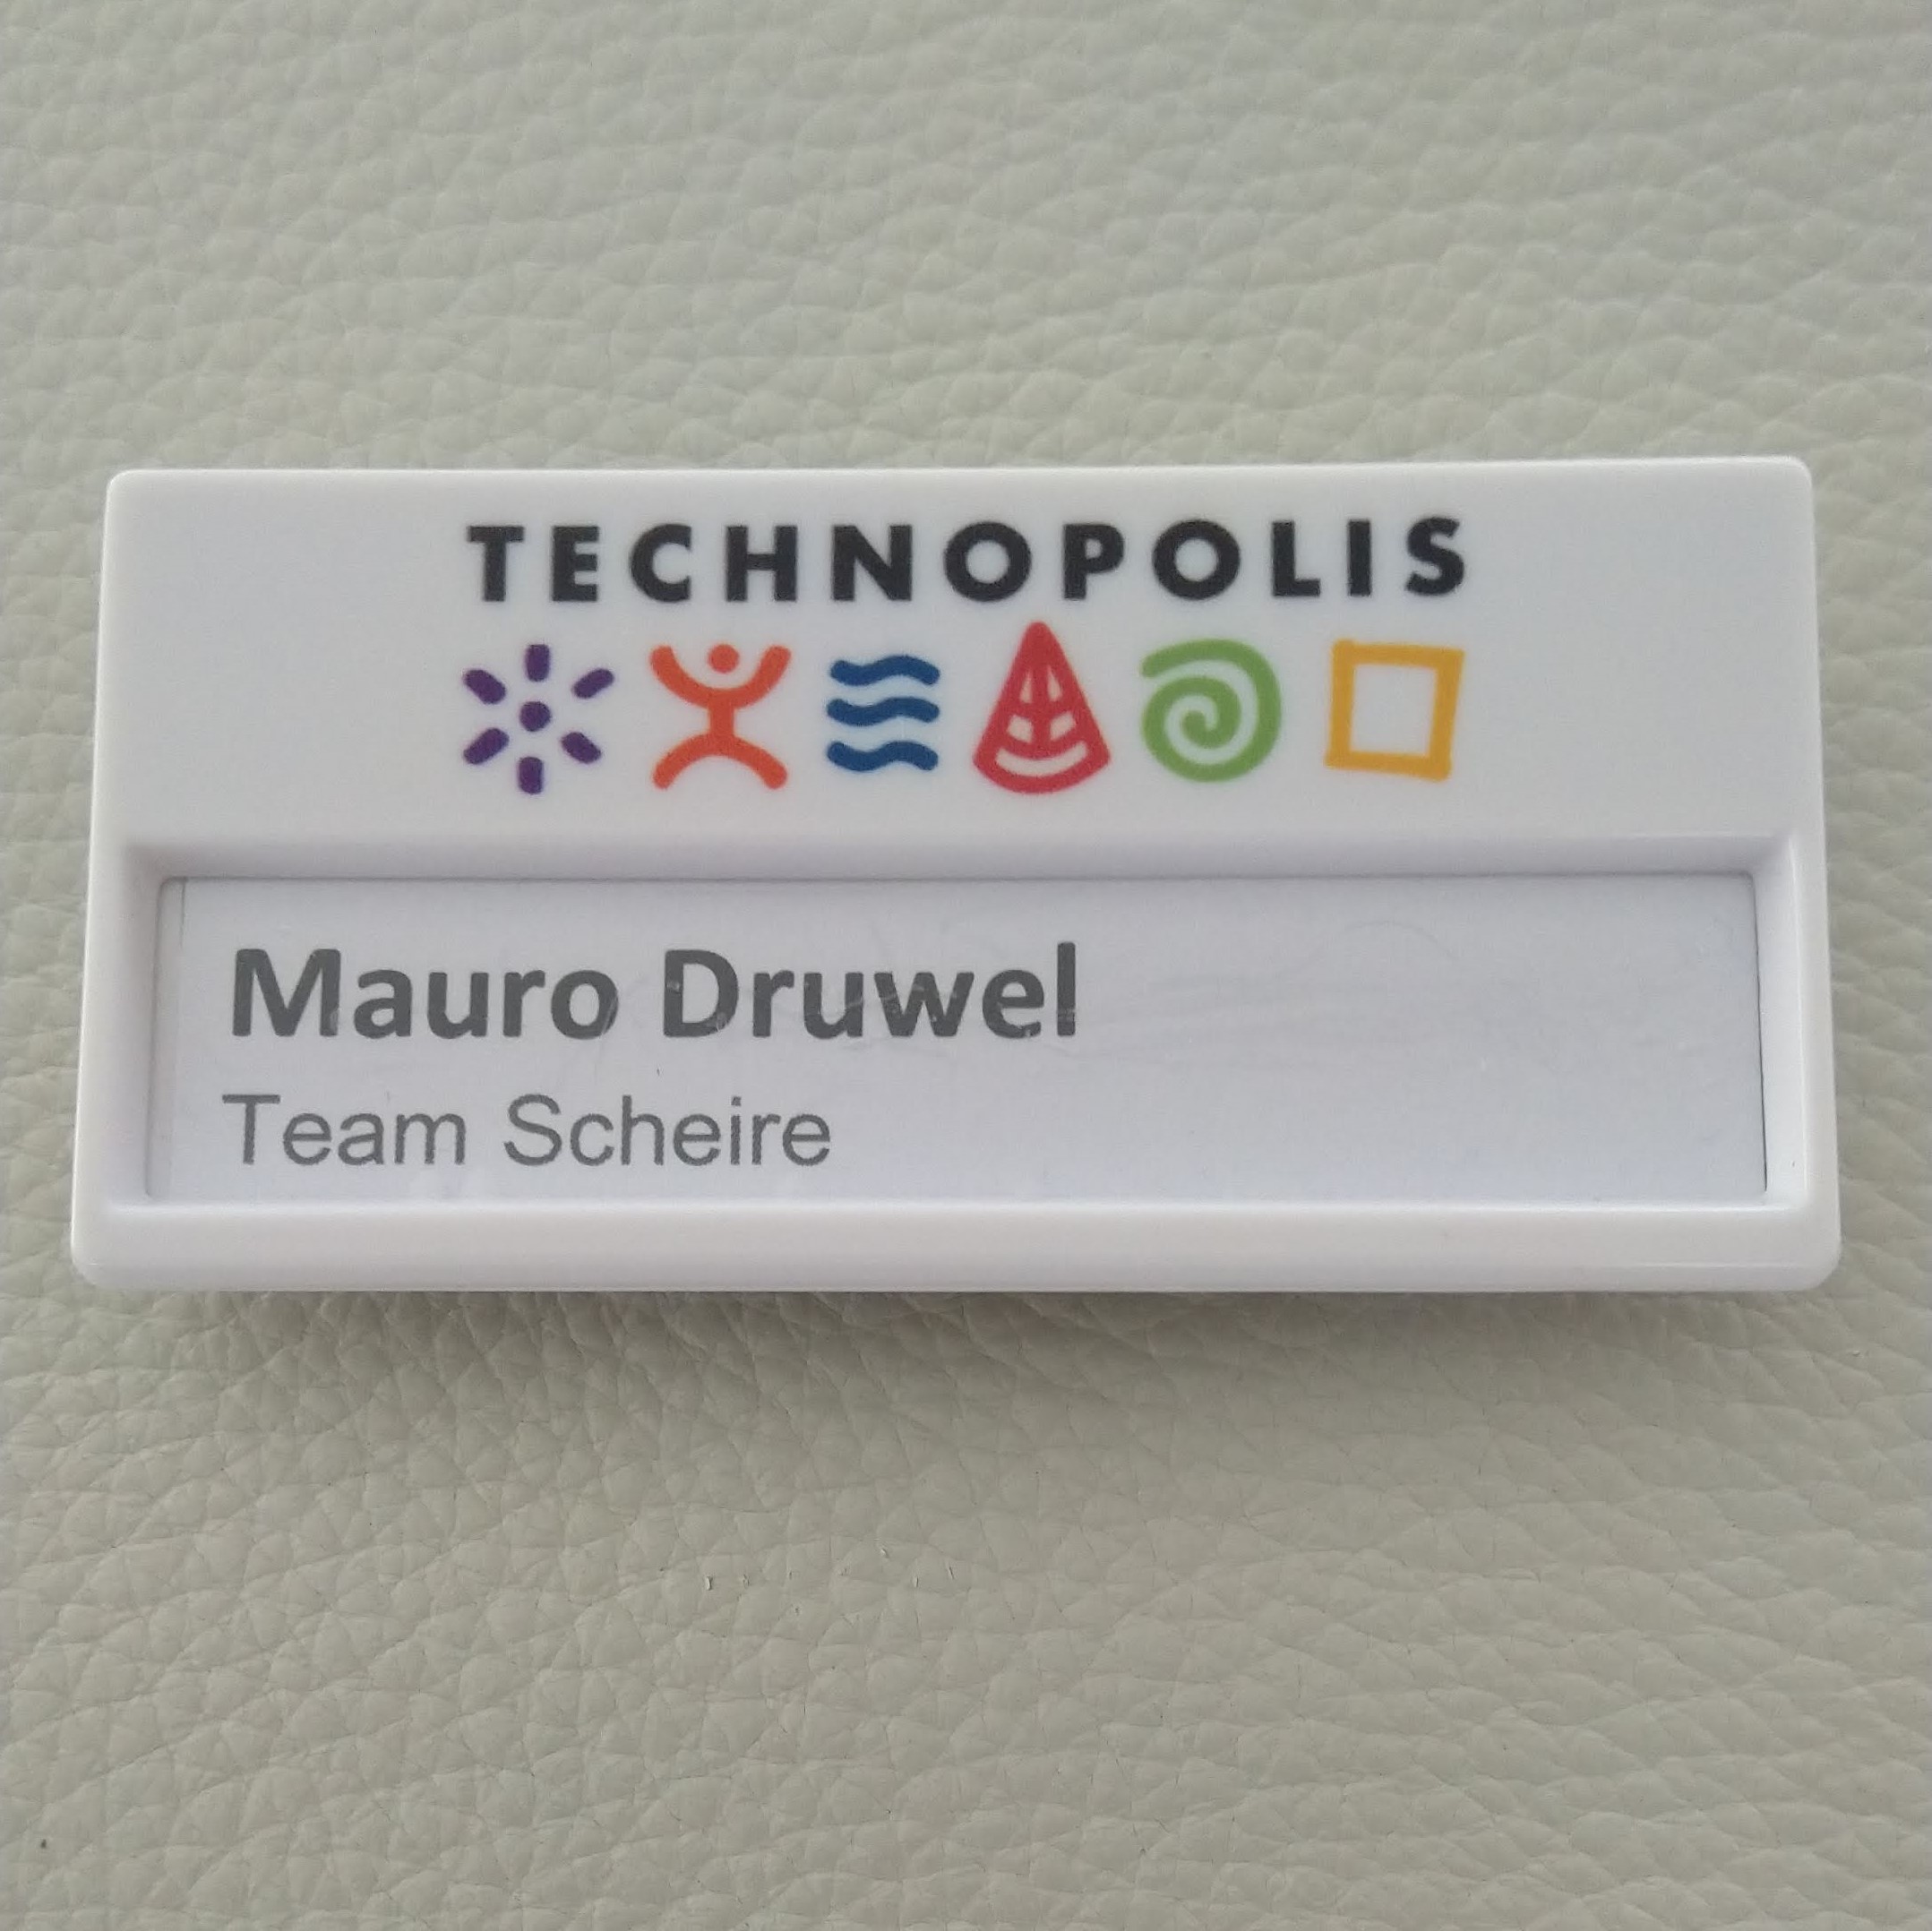 Team Scheire @ Technopolis